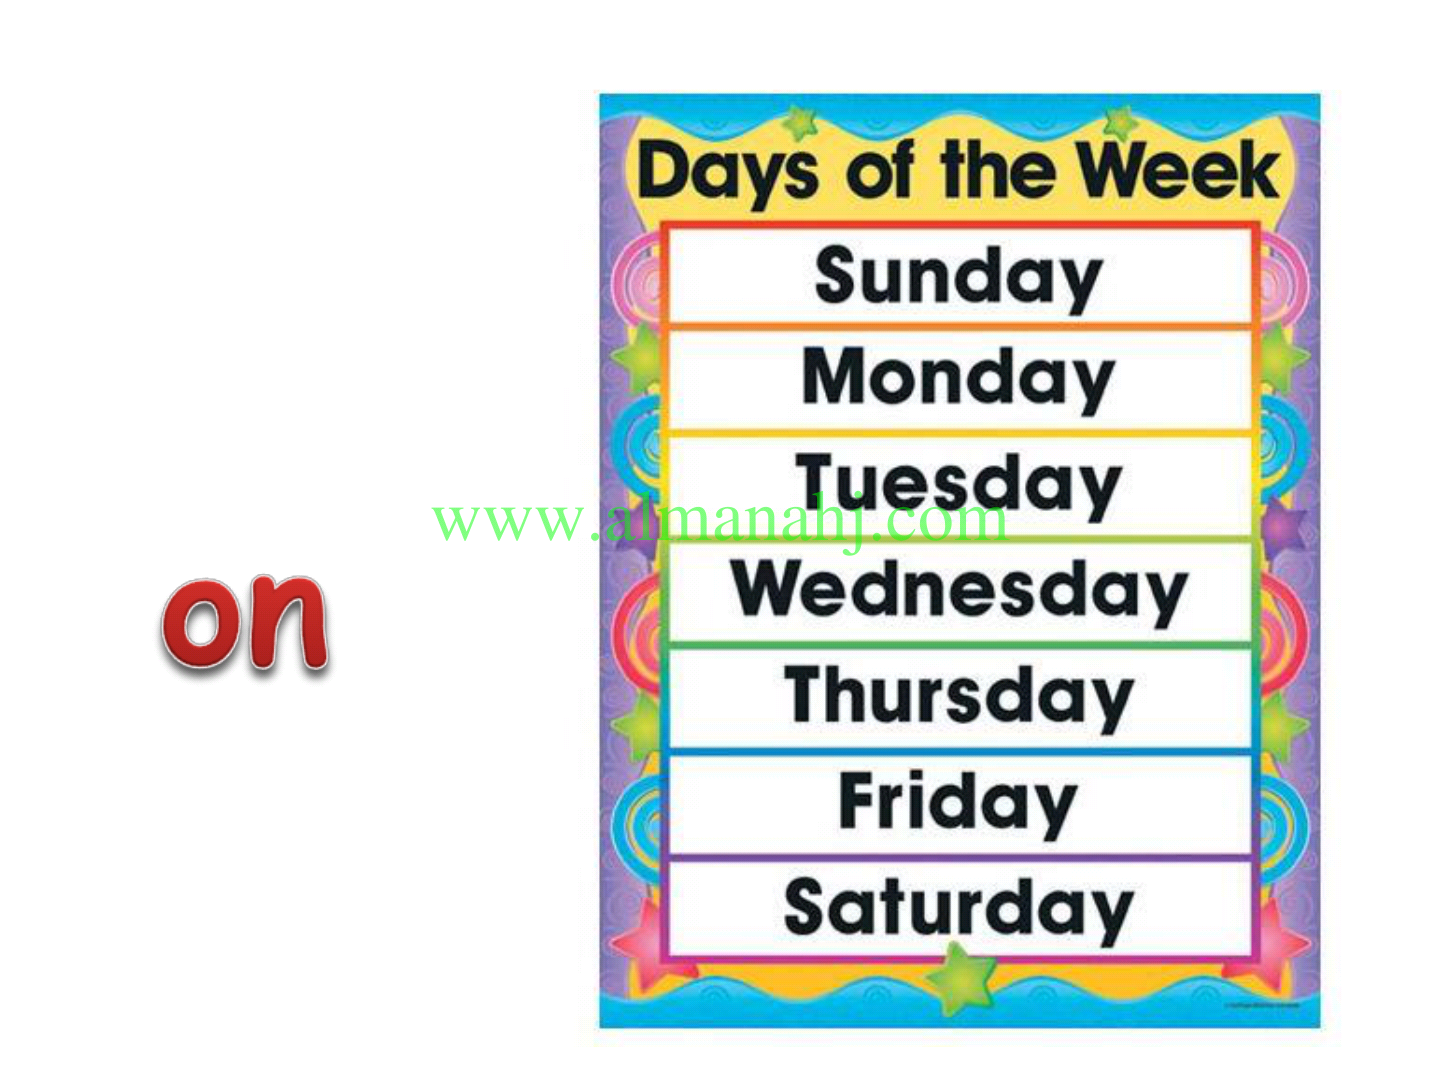 Picture of the week. Недели на английском. Закладка дни недели на английском. Название дней недели на английском. Карточки с днями недели на английском.